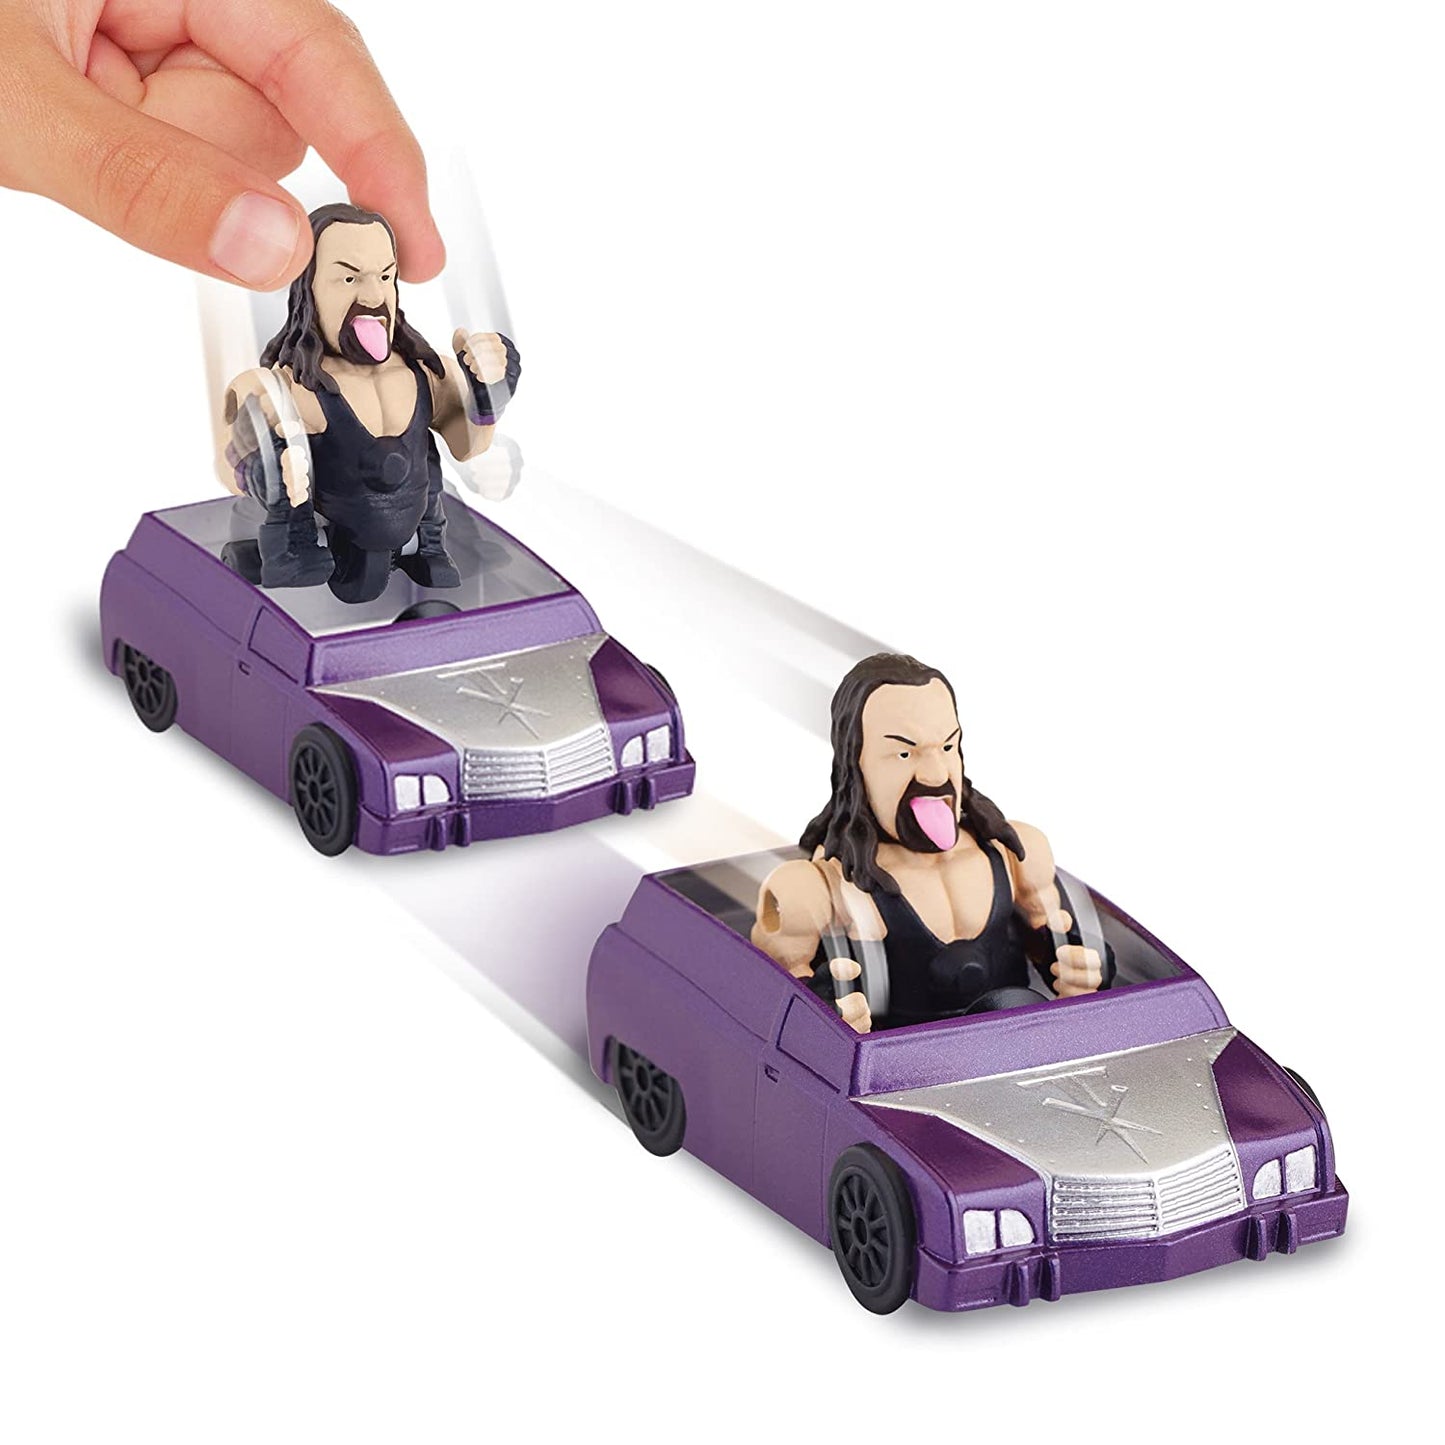 WWE nitro sprints Undertaker by Playmates